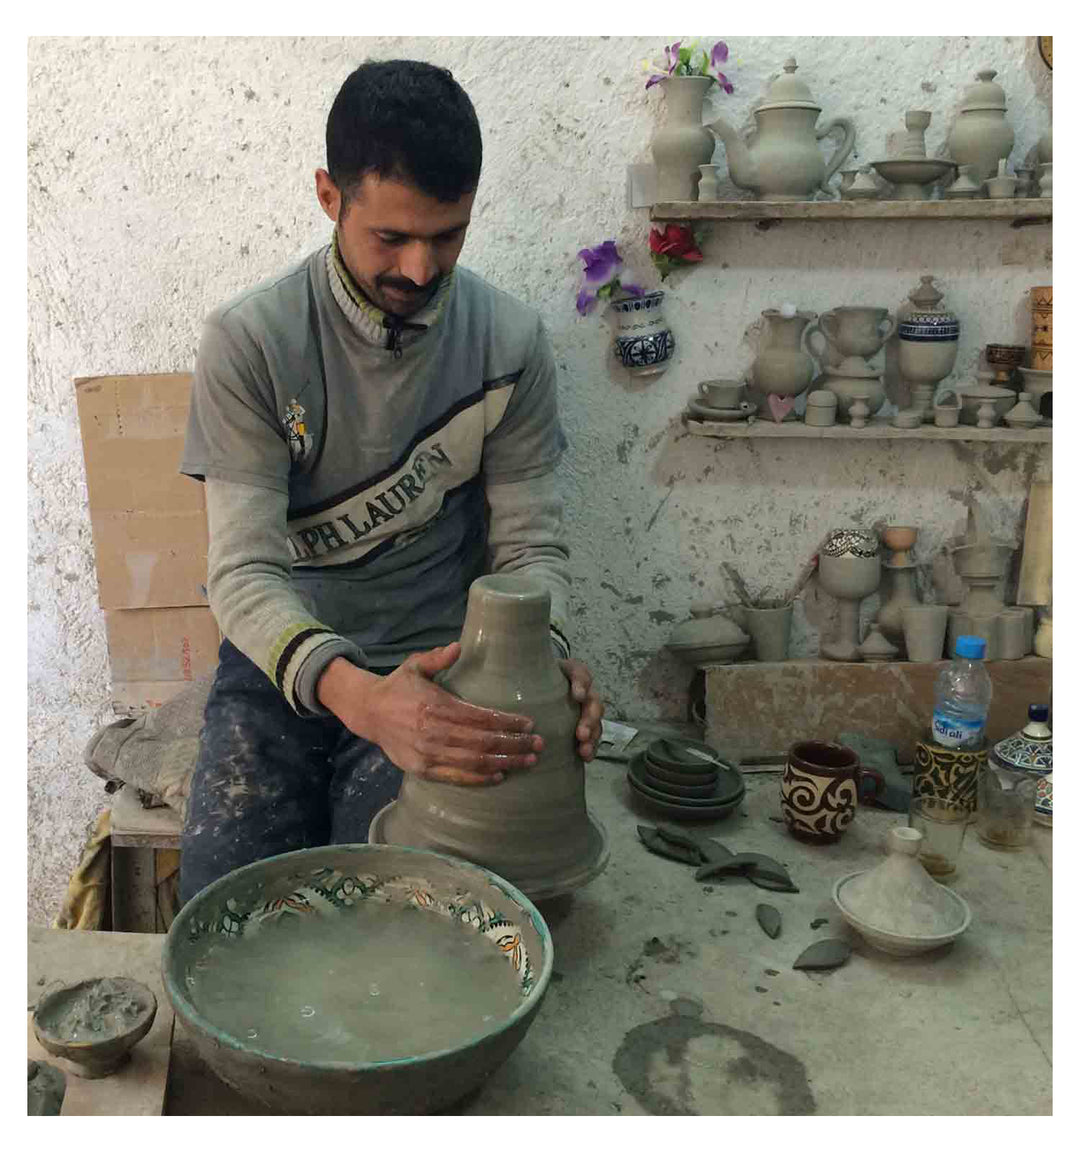 Orientalisches-Handbemaltes-Keramik-Waschbecken Fes44